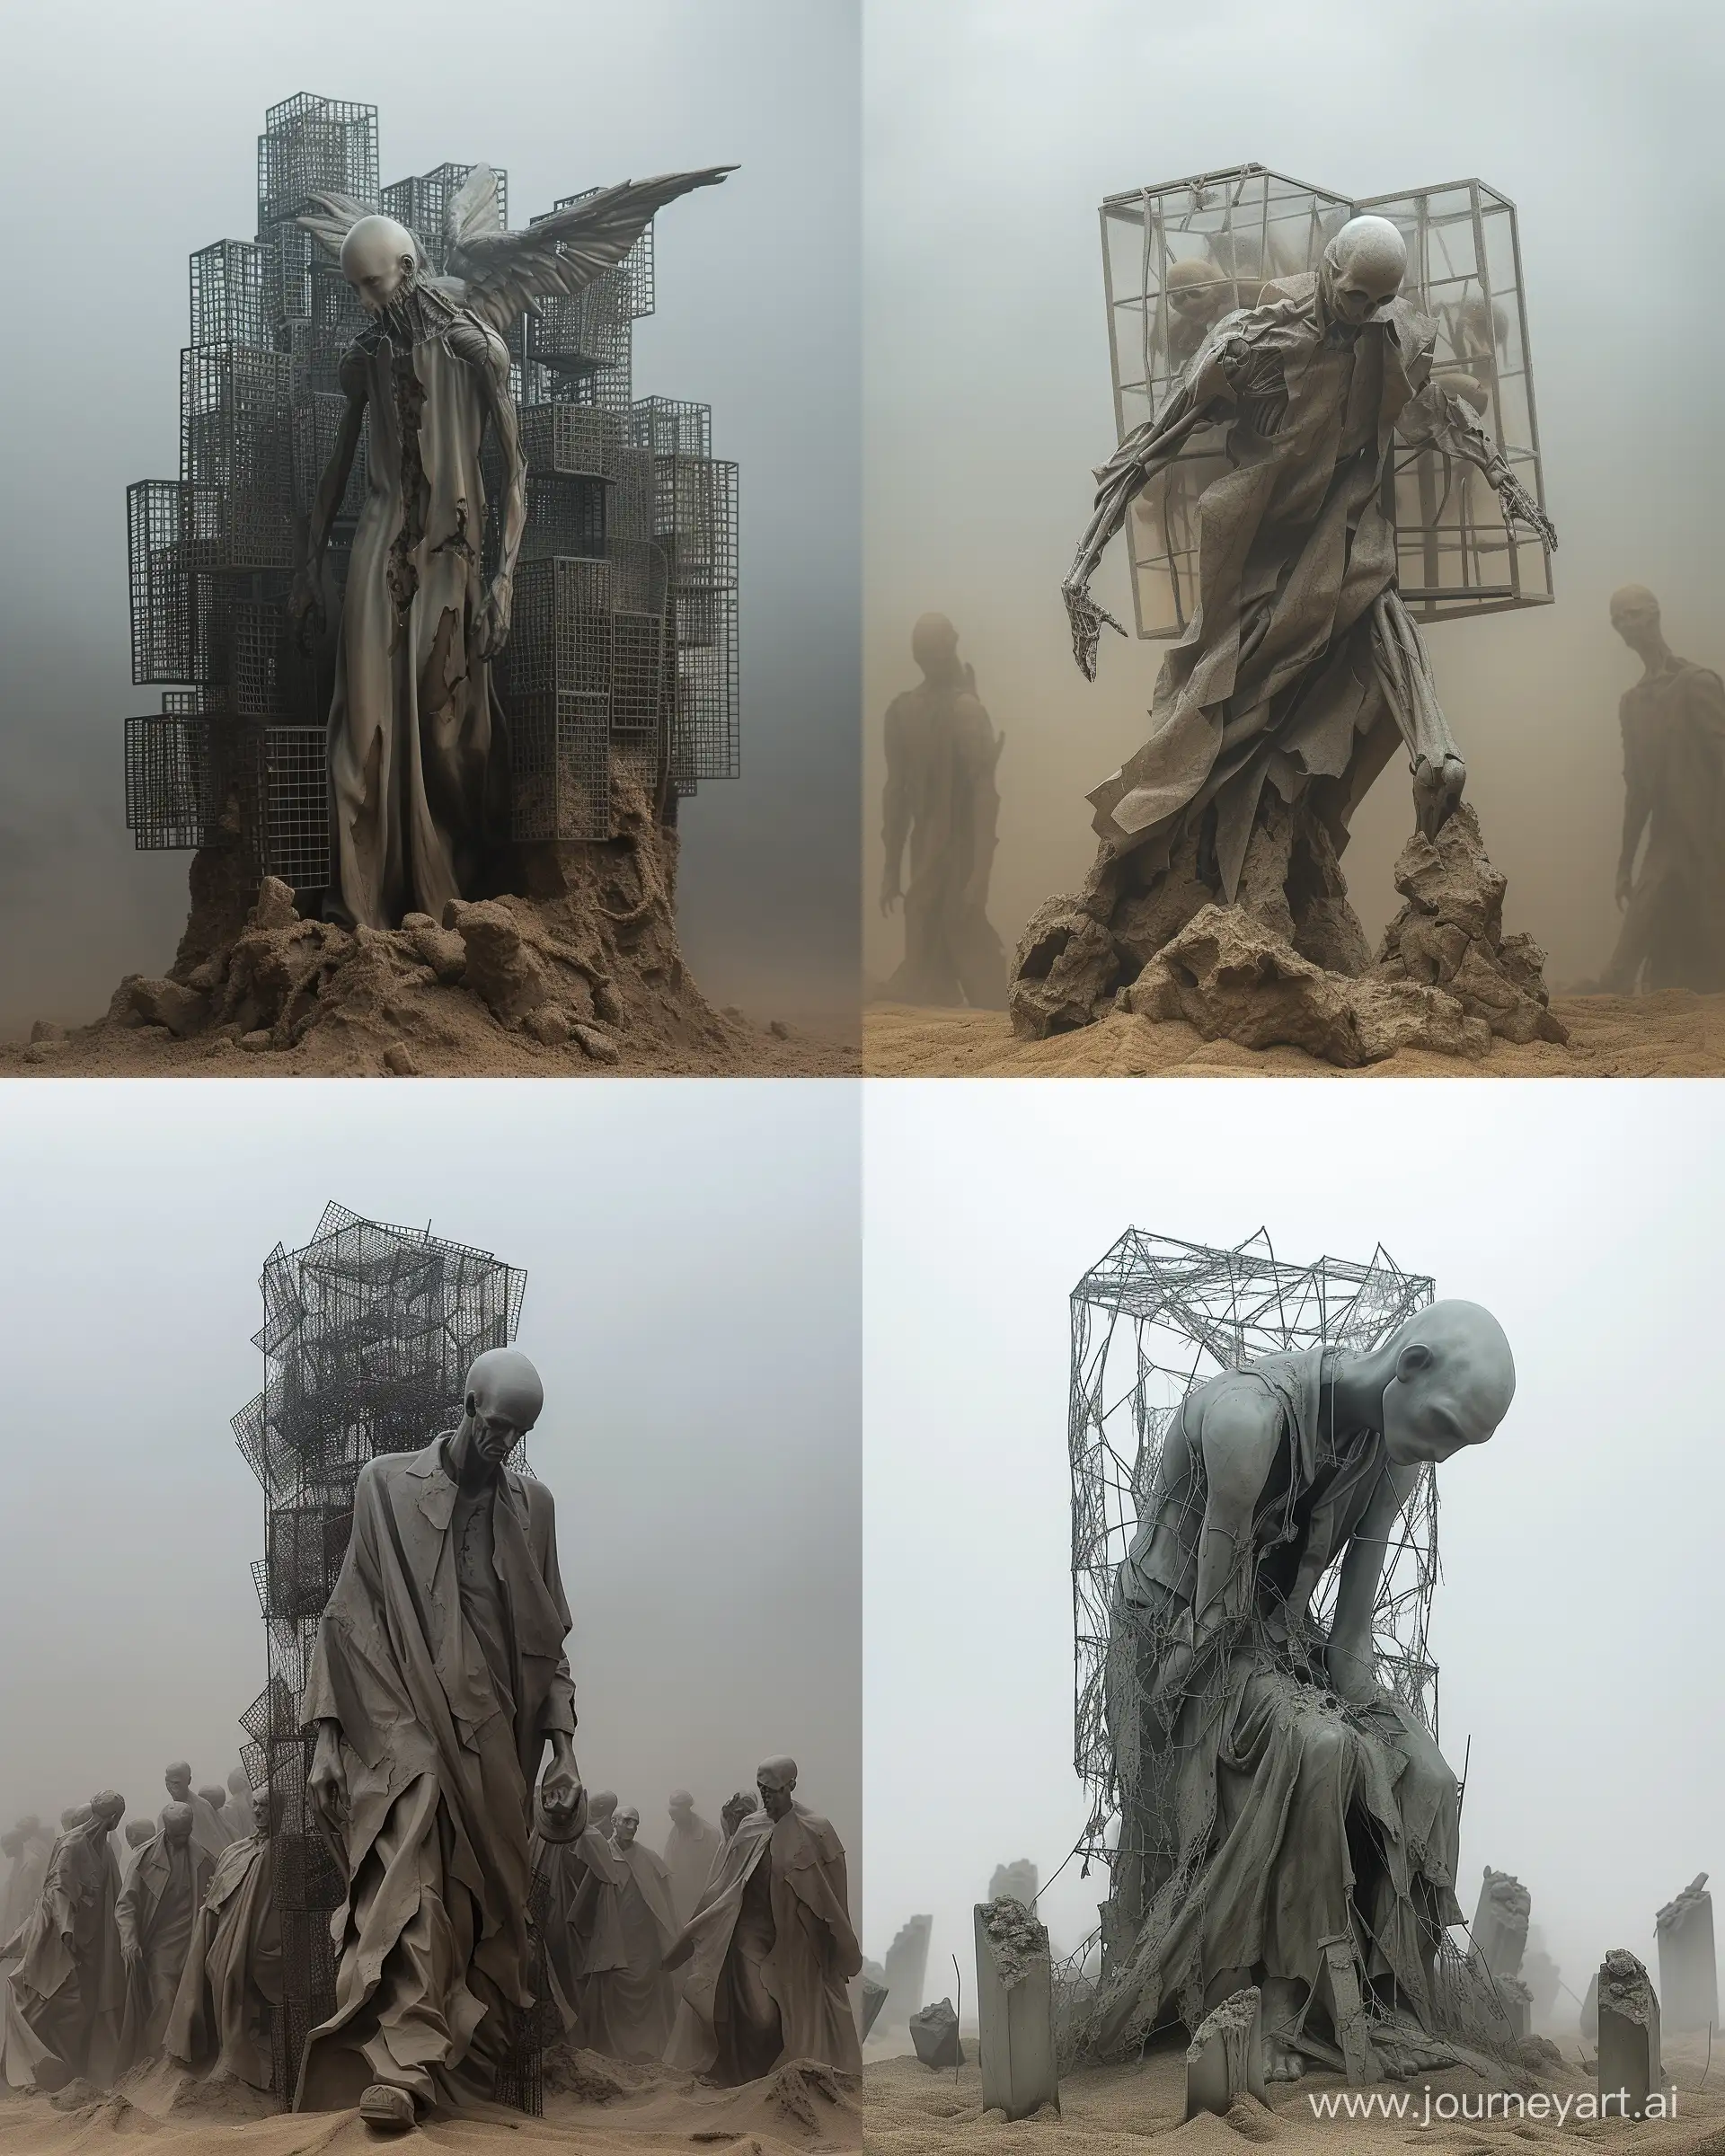 https://i.postimg.cc/9fFdkYF4/twlzjyoeiqgbbxzdjcedmmahzpdmeefl.png,surrealistic sculpture in style of Zdzisław Beksiński, apocalypse atmosphere  --ar 4:5